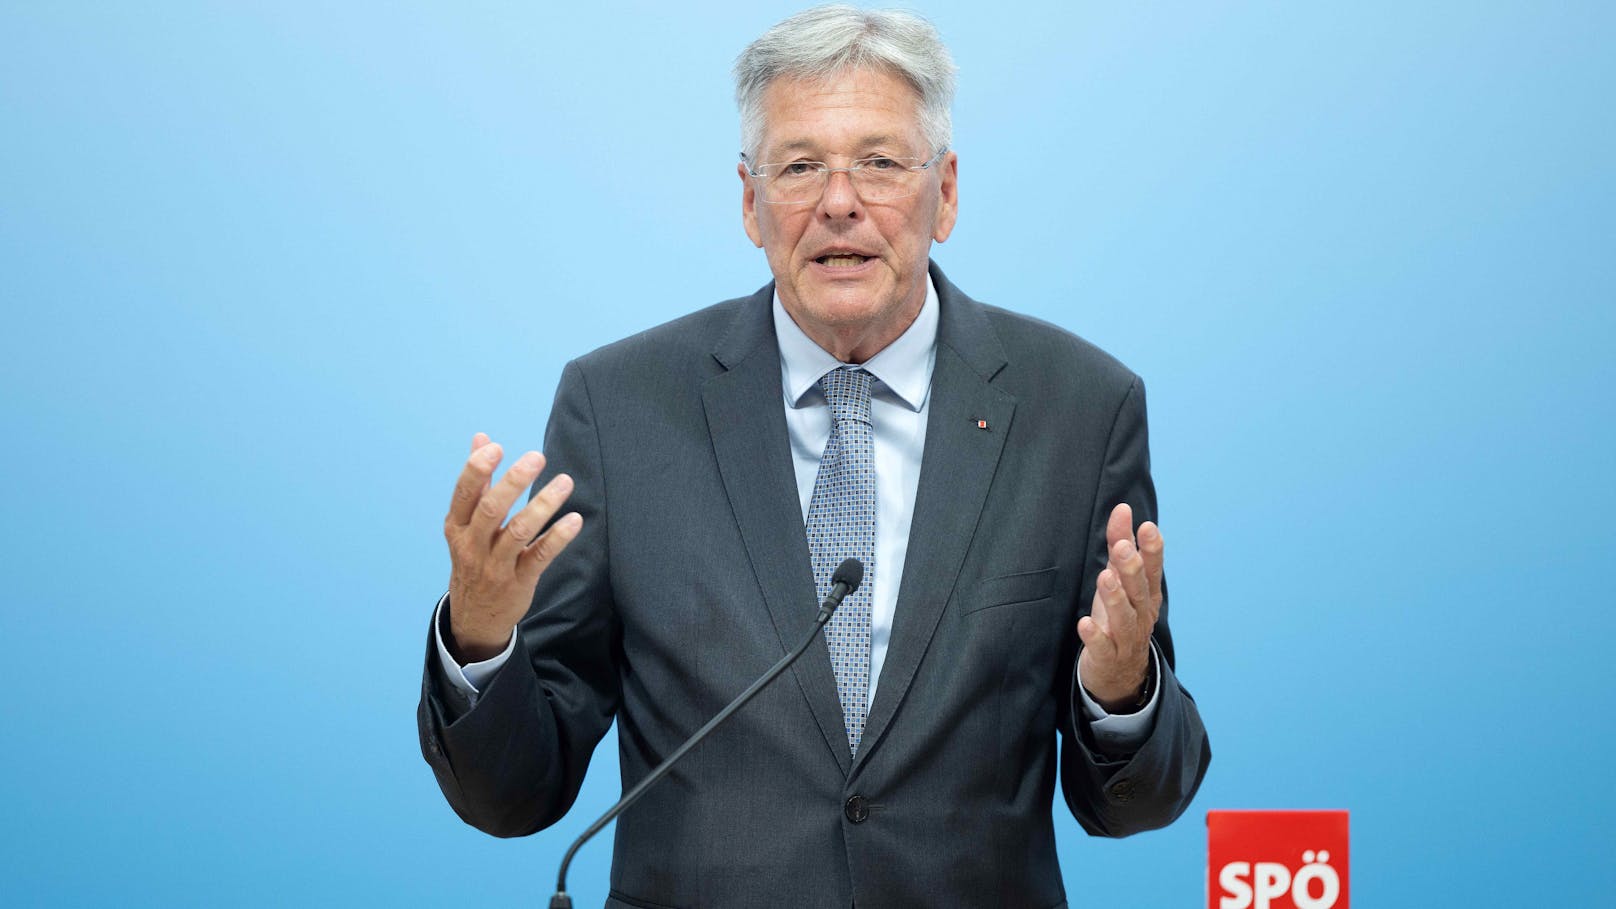 SP-Landeschef will Integrationsvertrag für Flüchtlinge